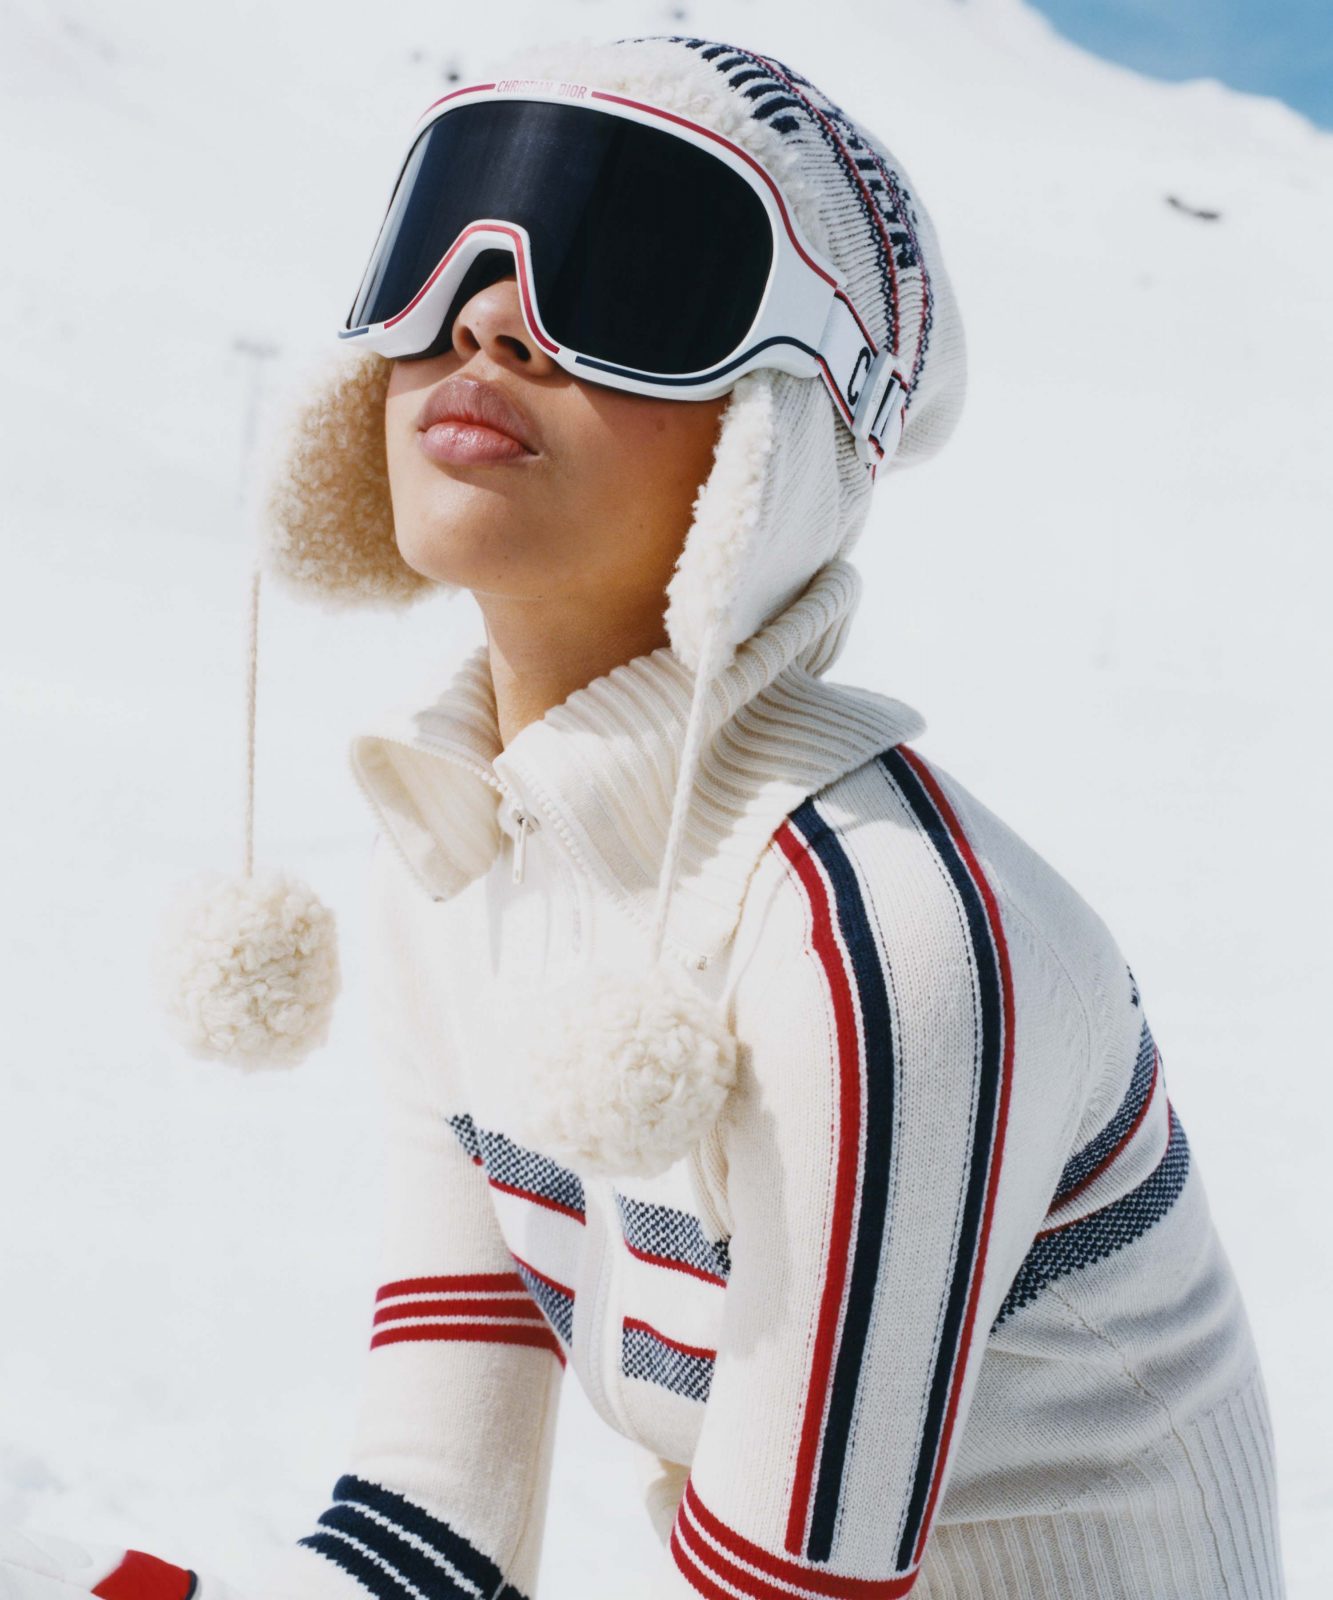 Apres Ski Fashion: Essentials for Her